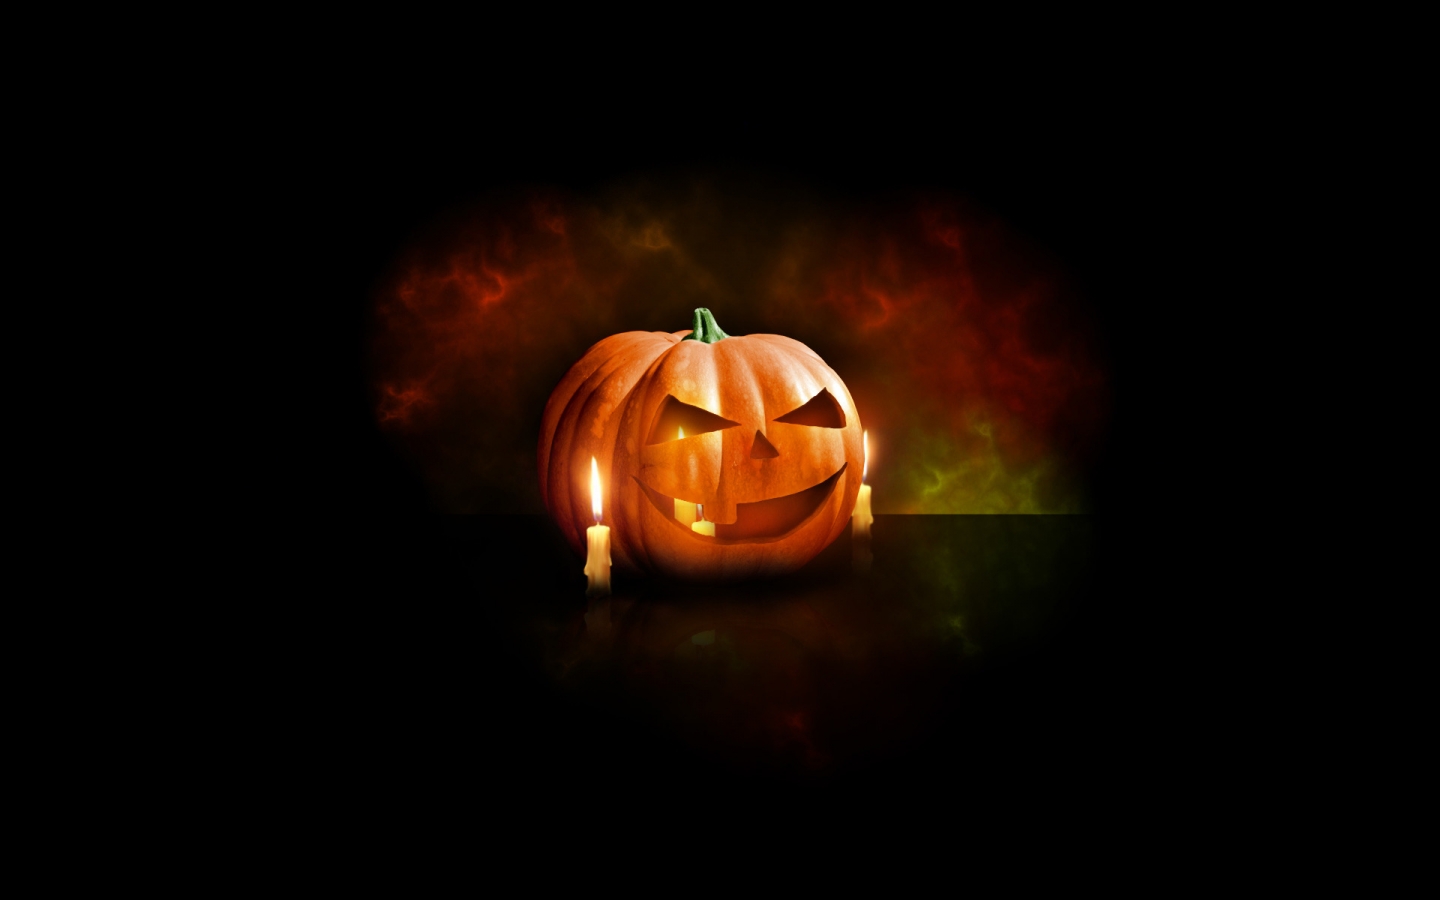 Halloween Pumpkin for 1440 x 900 widescreen resolution